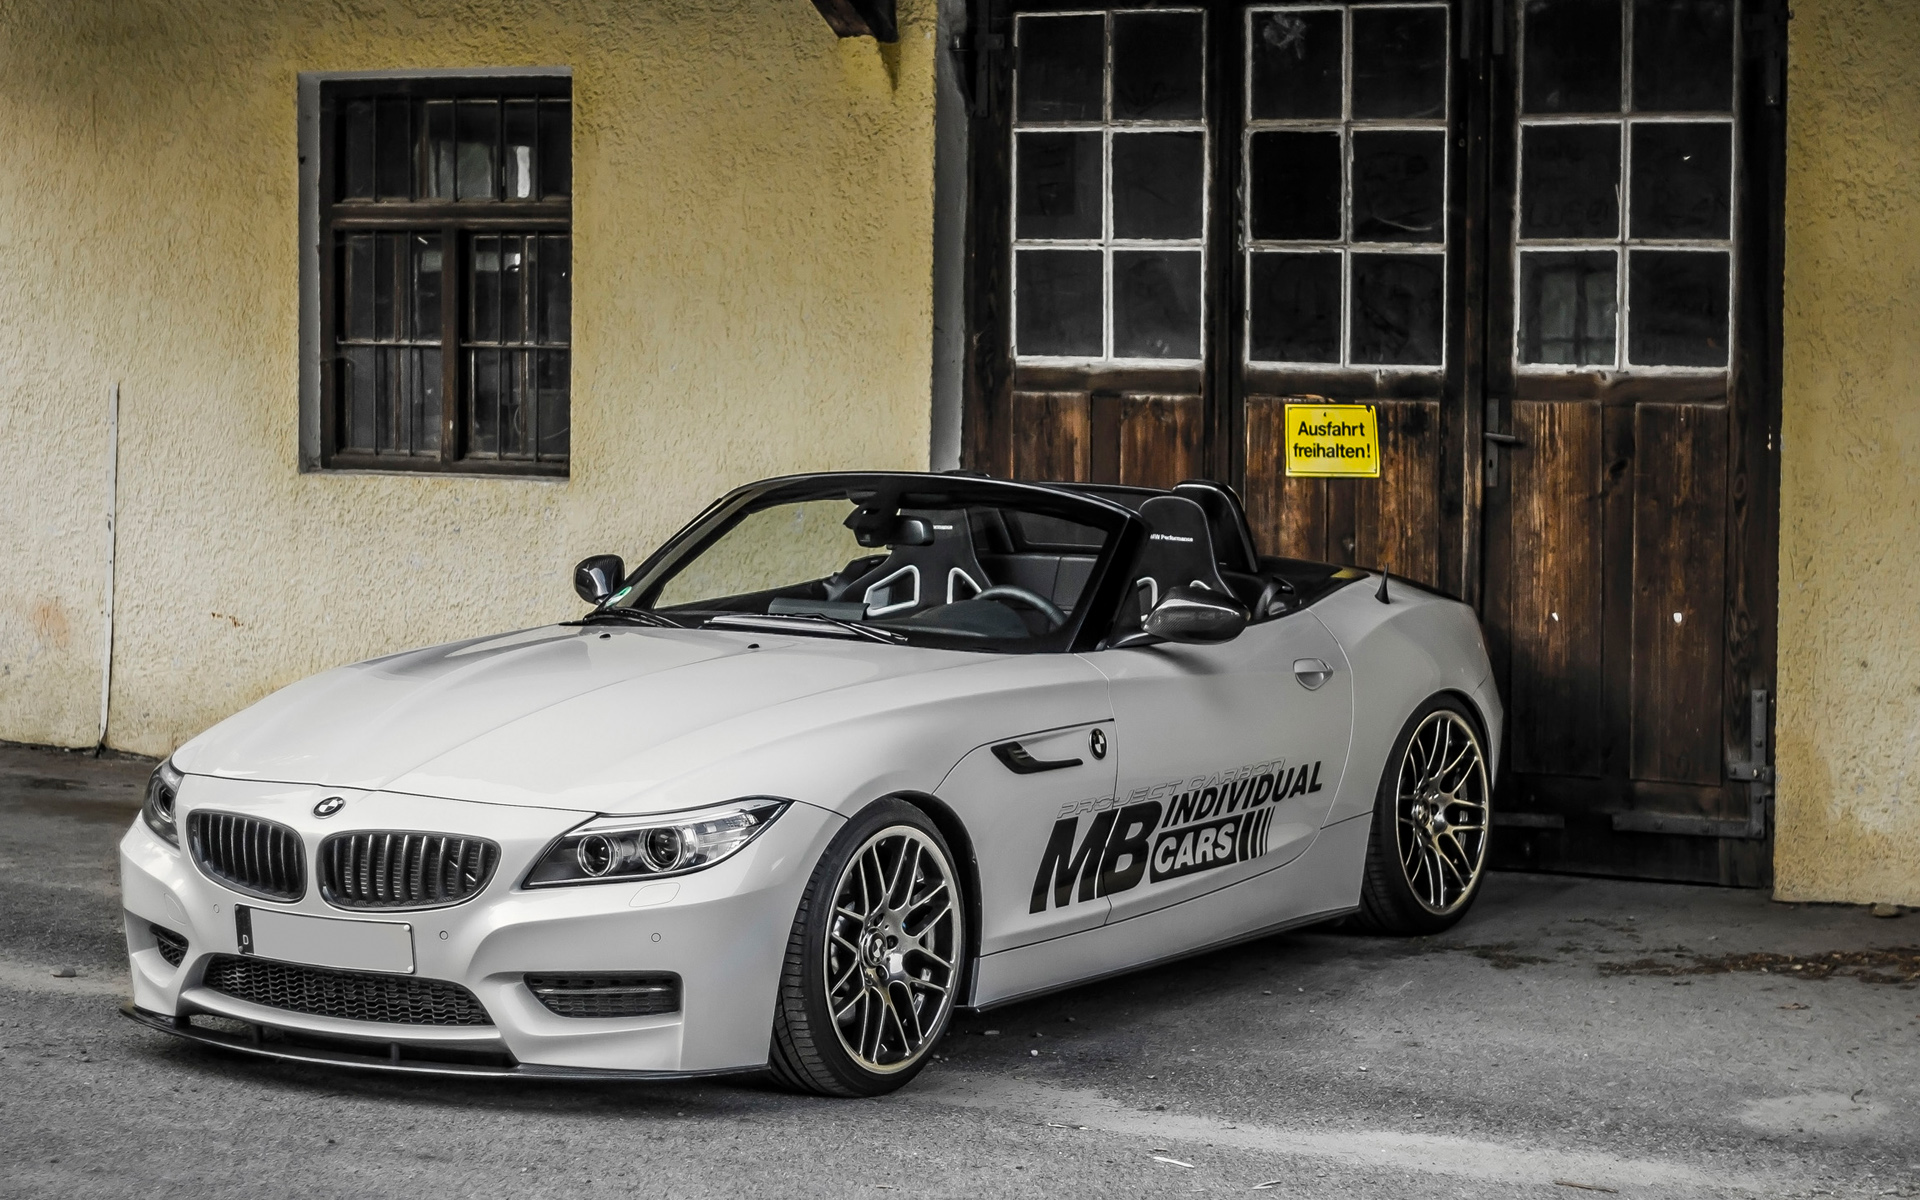 2014 MB BMW Z4 E89 Carbon Fiber Body Kit Wallpaper | HD Car Wallpapers | ID #4099